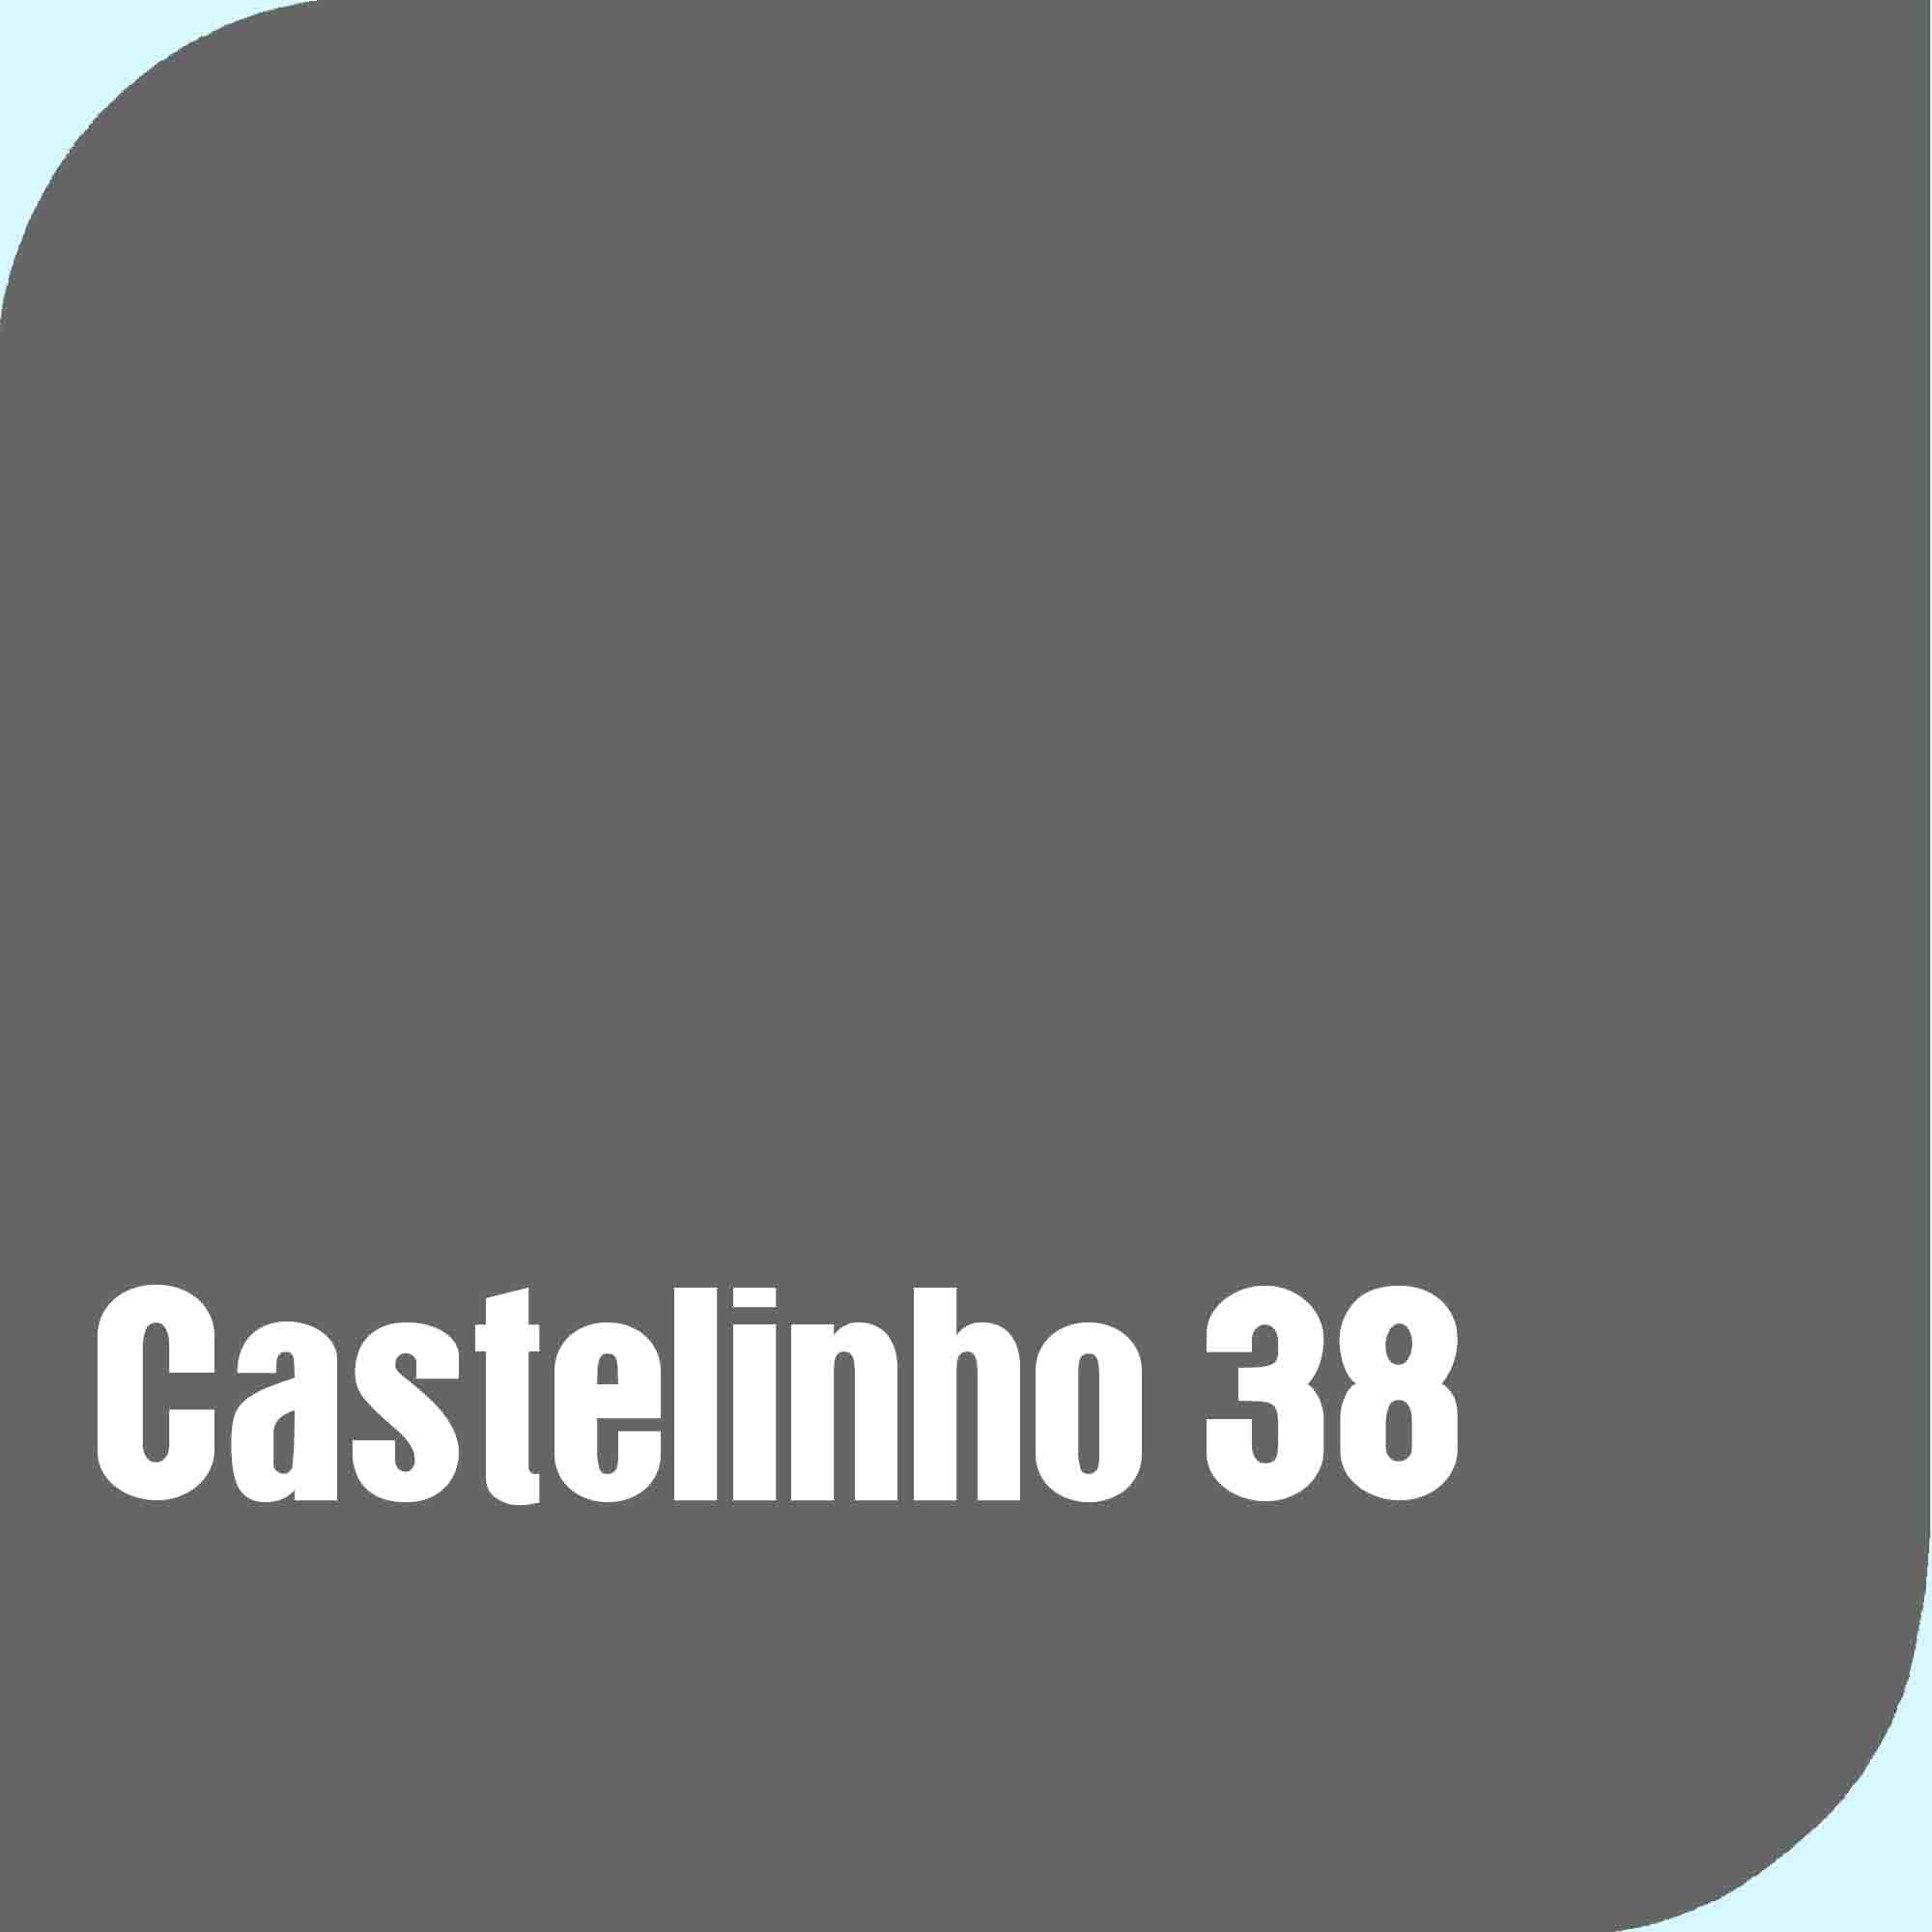 Castelinho38